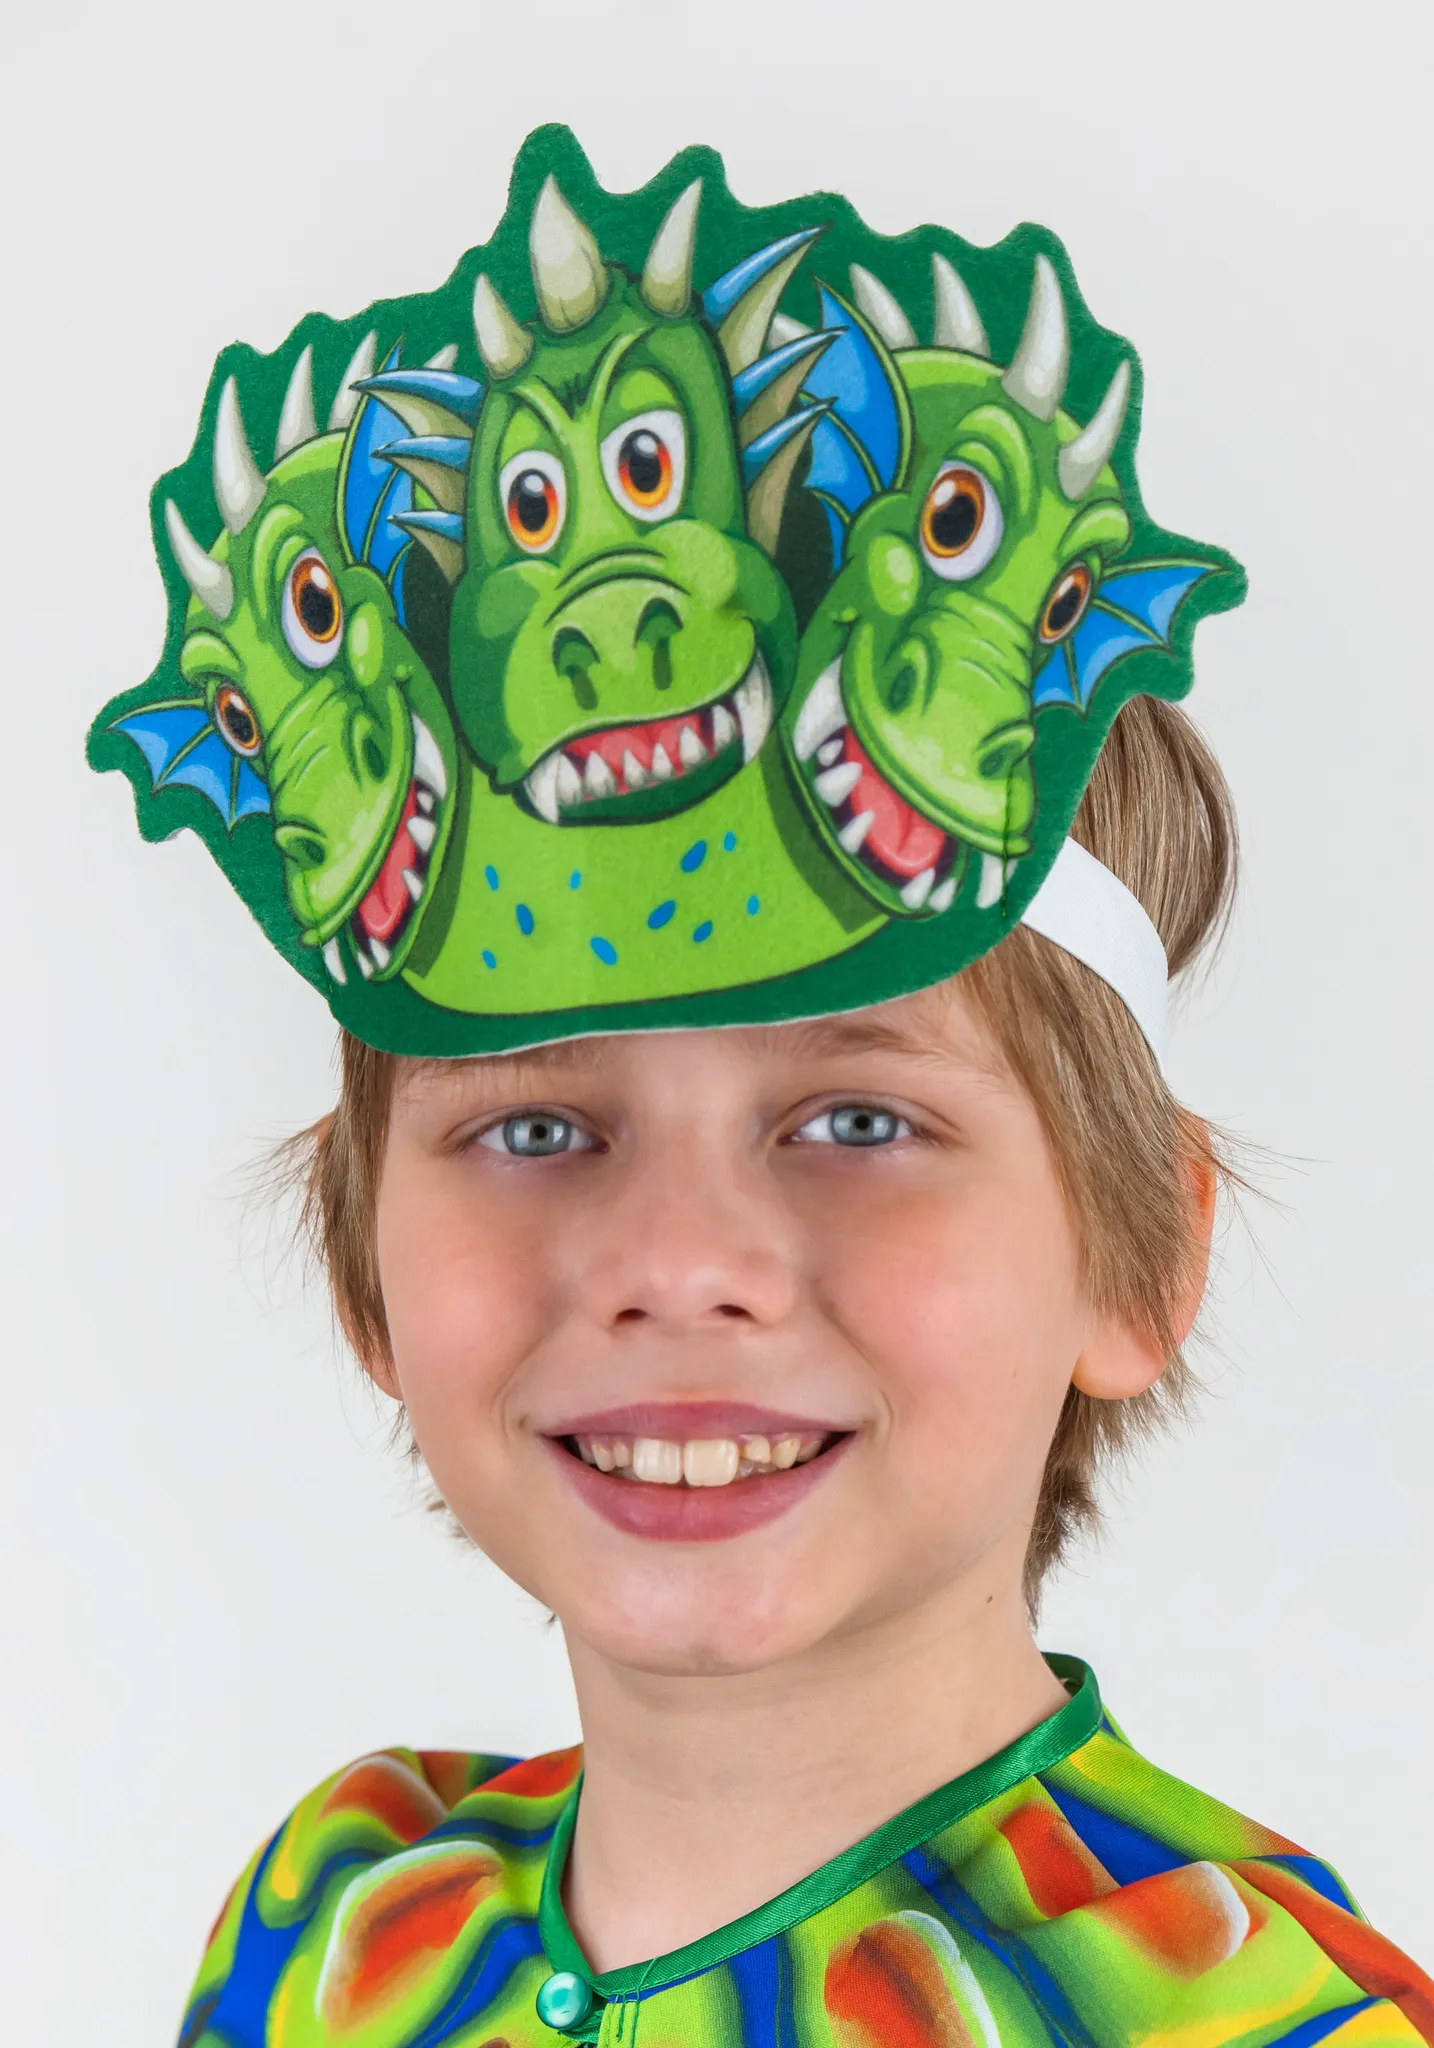 Шоу маска горыныч 6 выпуск. Змей Горыныч маска. Дети в карнавальных костюмах змея. Карнавальная маска змеи. Маска дракона.